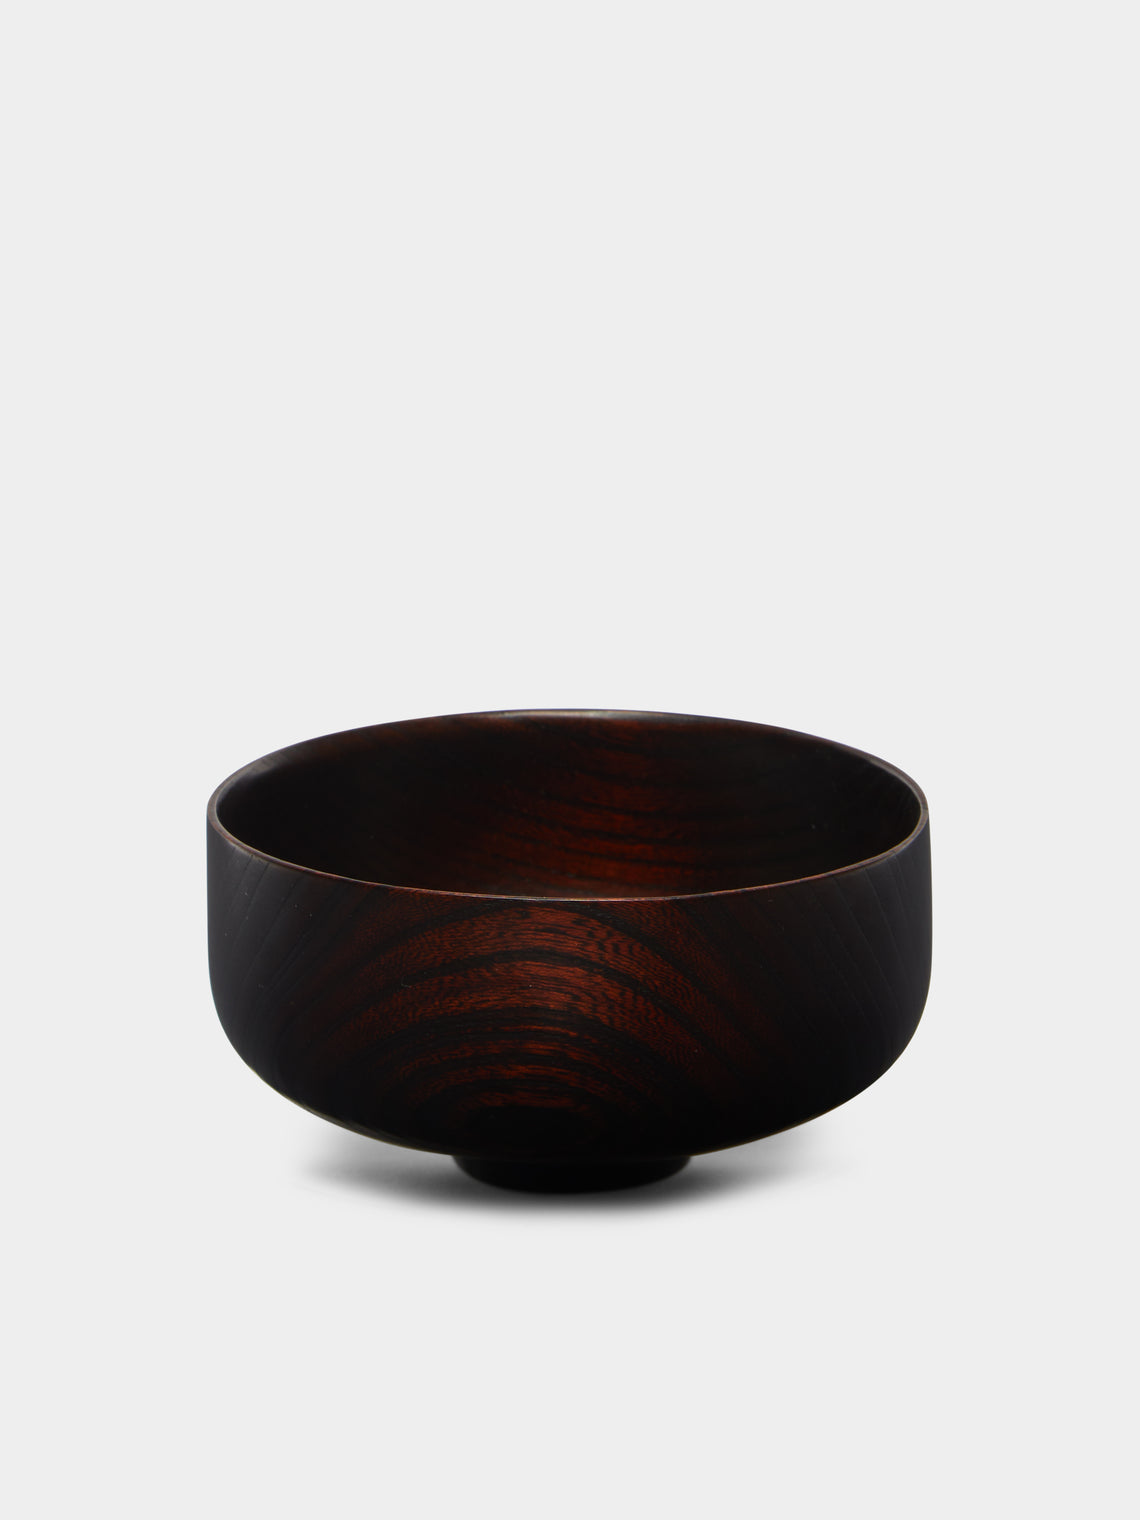 Suk Keun Kang - Ottchil Wood Bowl -  - ABASK - 